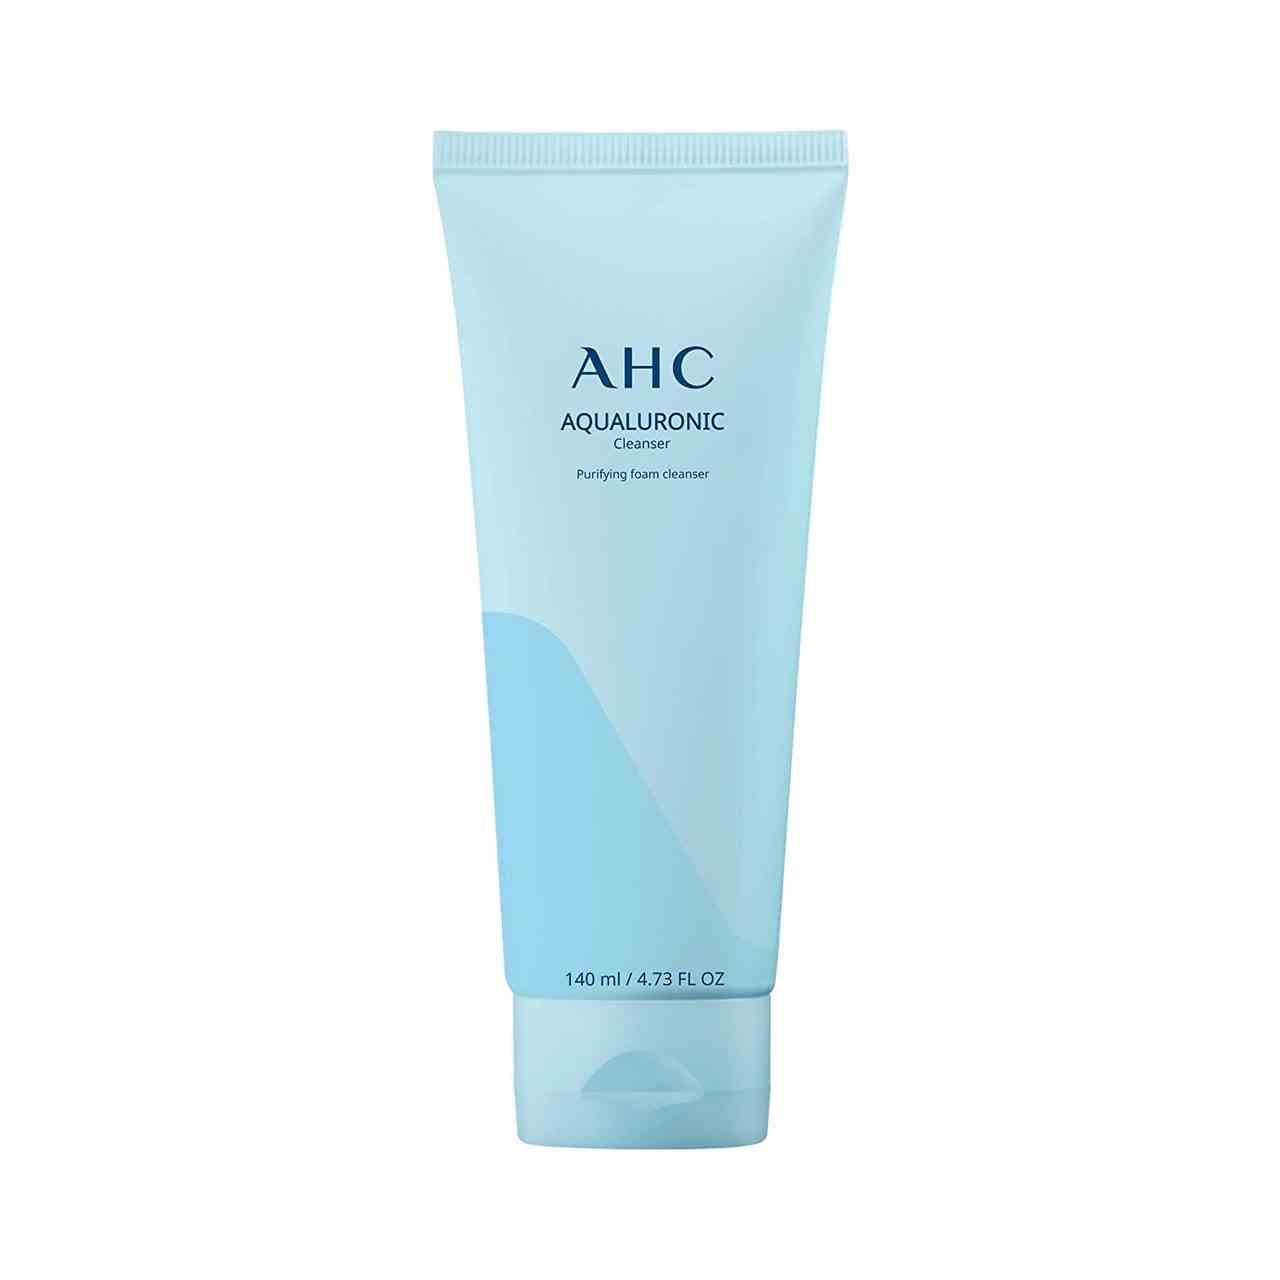 Eine blaue Flasche AHC Aqualuronic Cleanser auf weißem Hintergrund